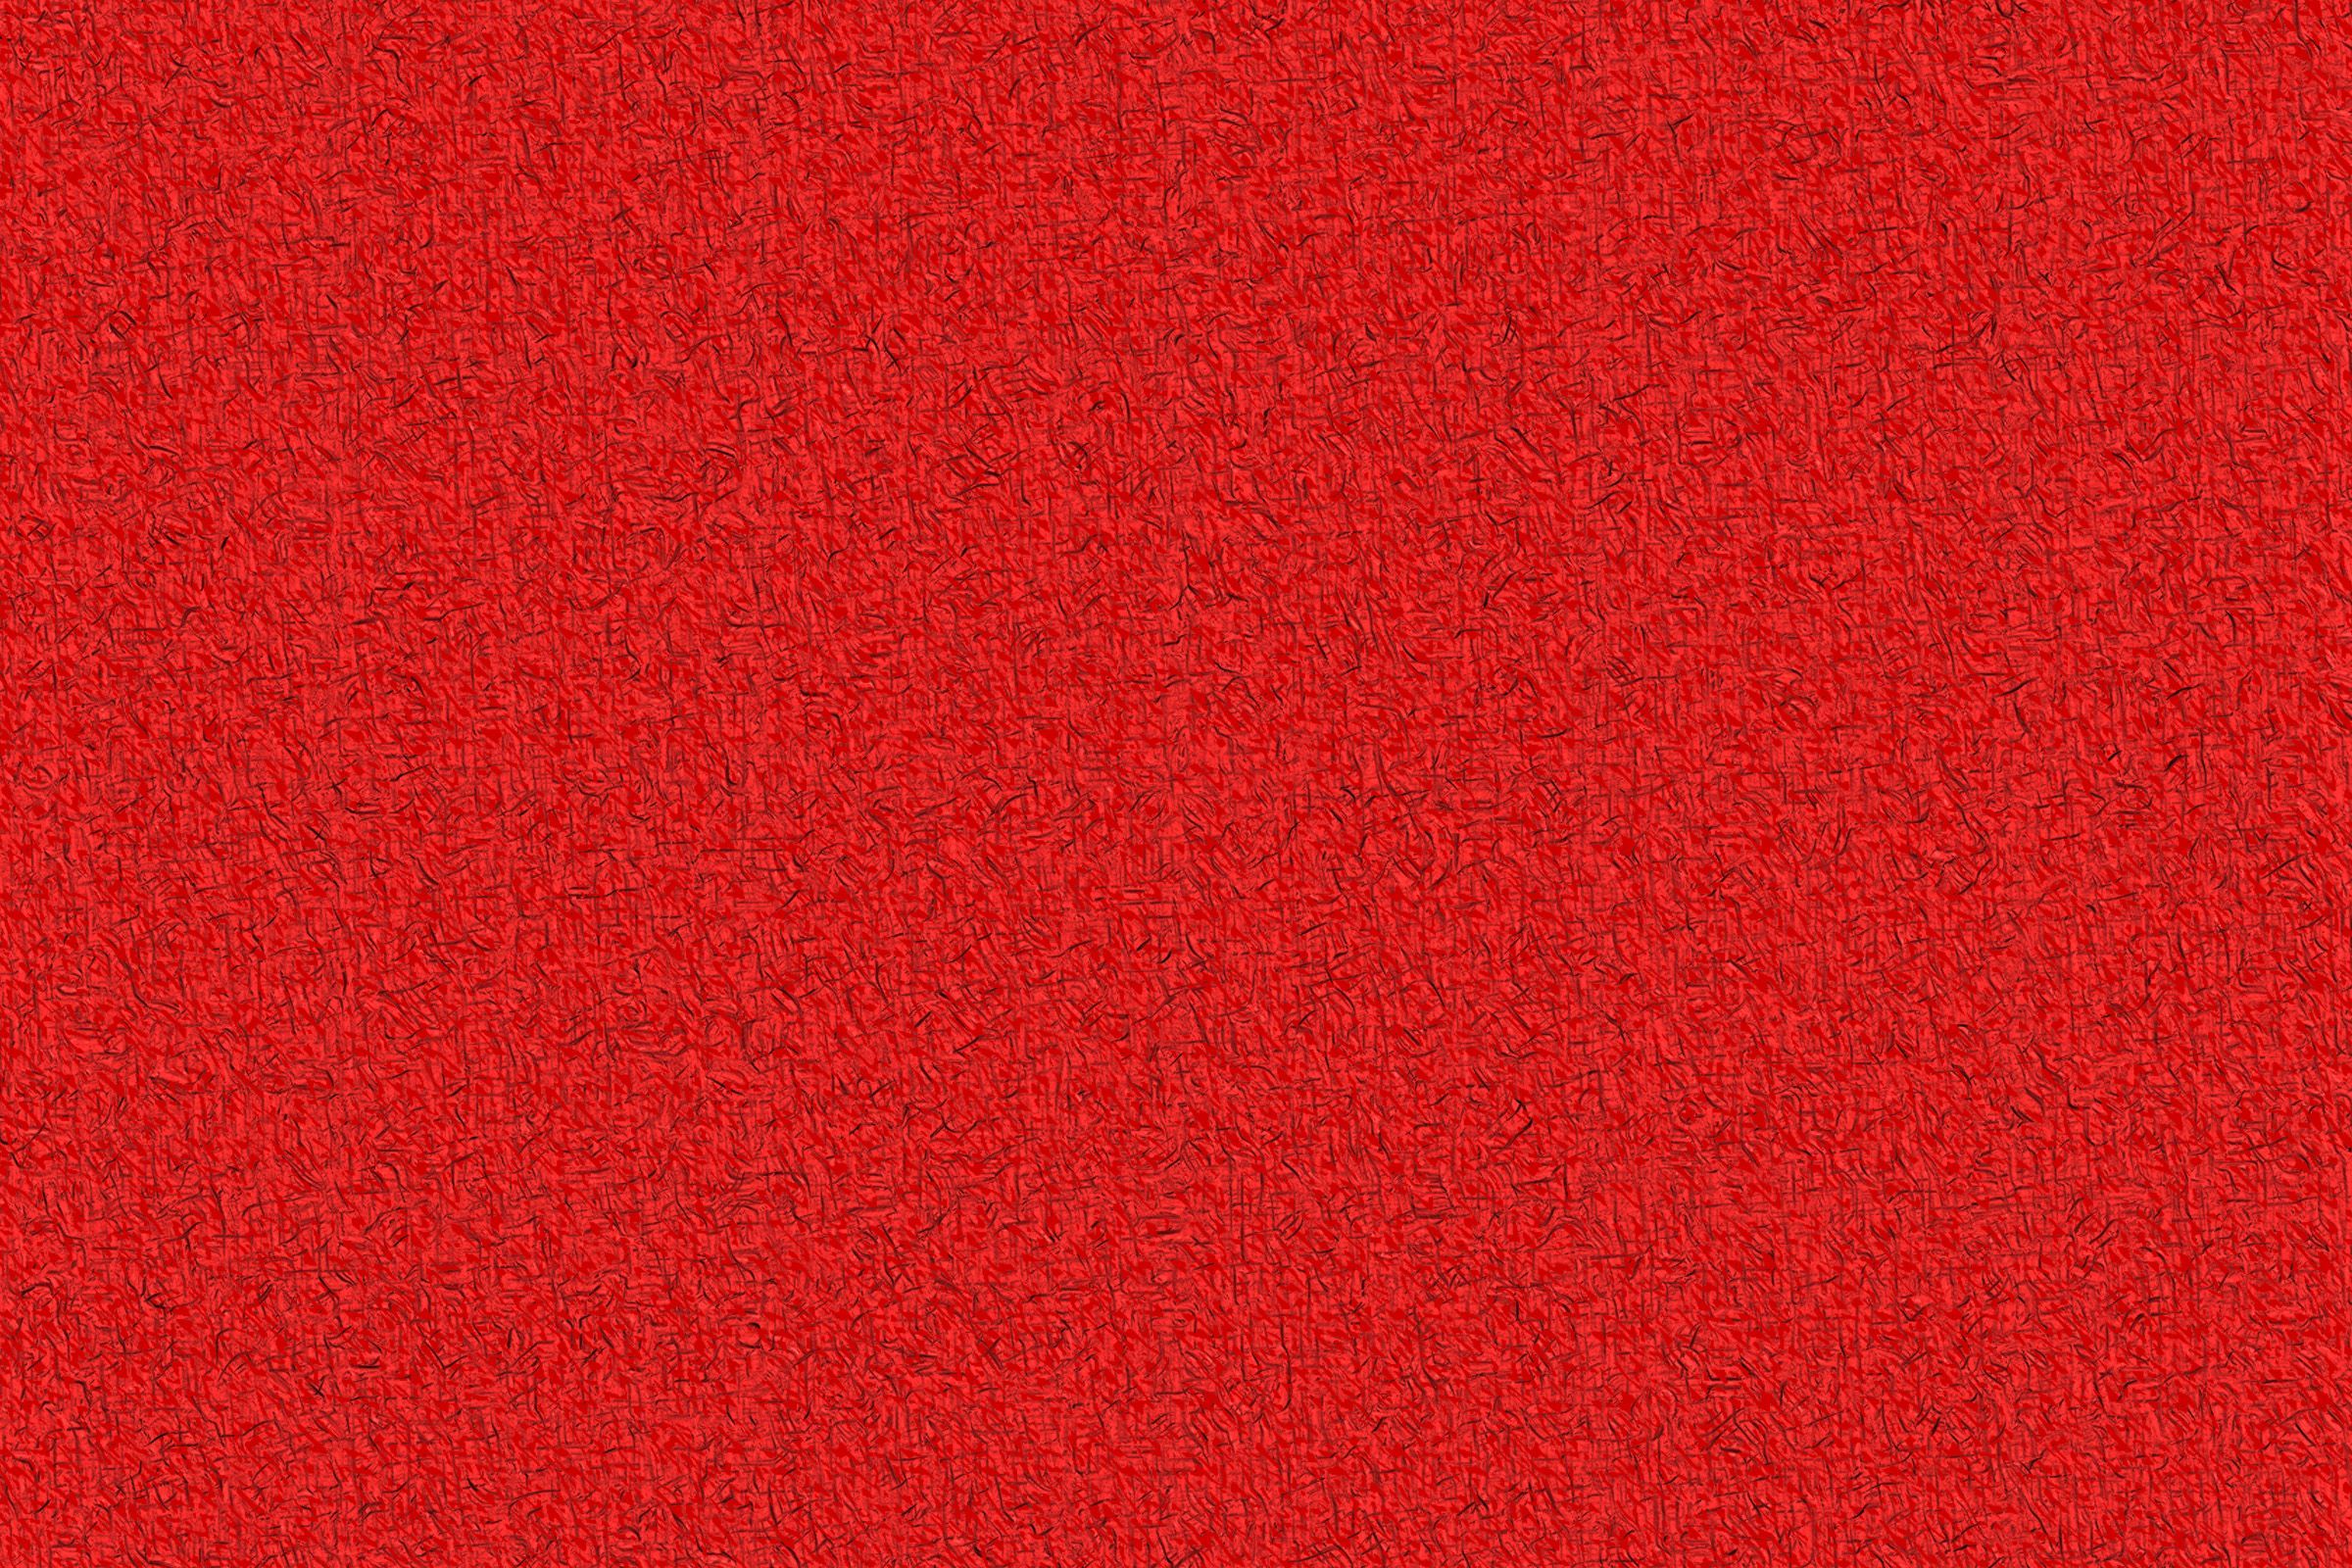 Rote Hintergrundbild 2400x1600. Rote Hintergrundbilder kostenlos